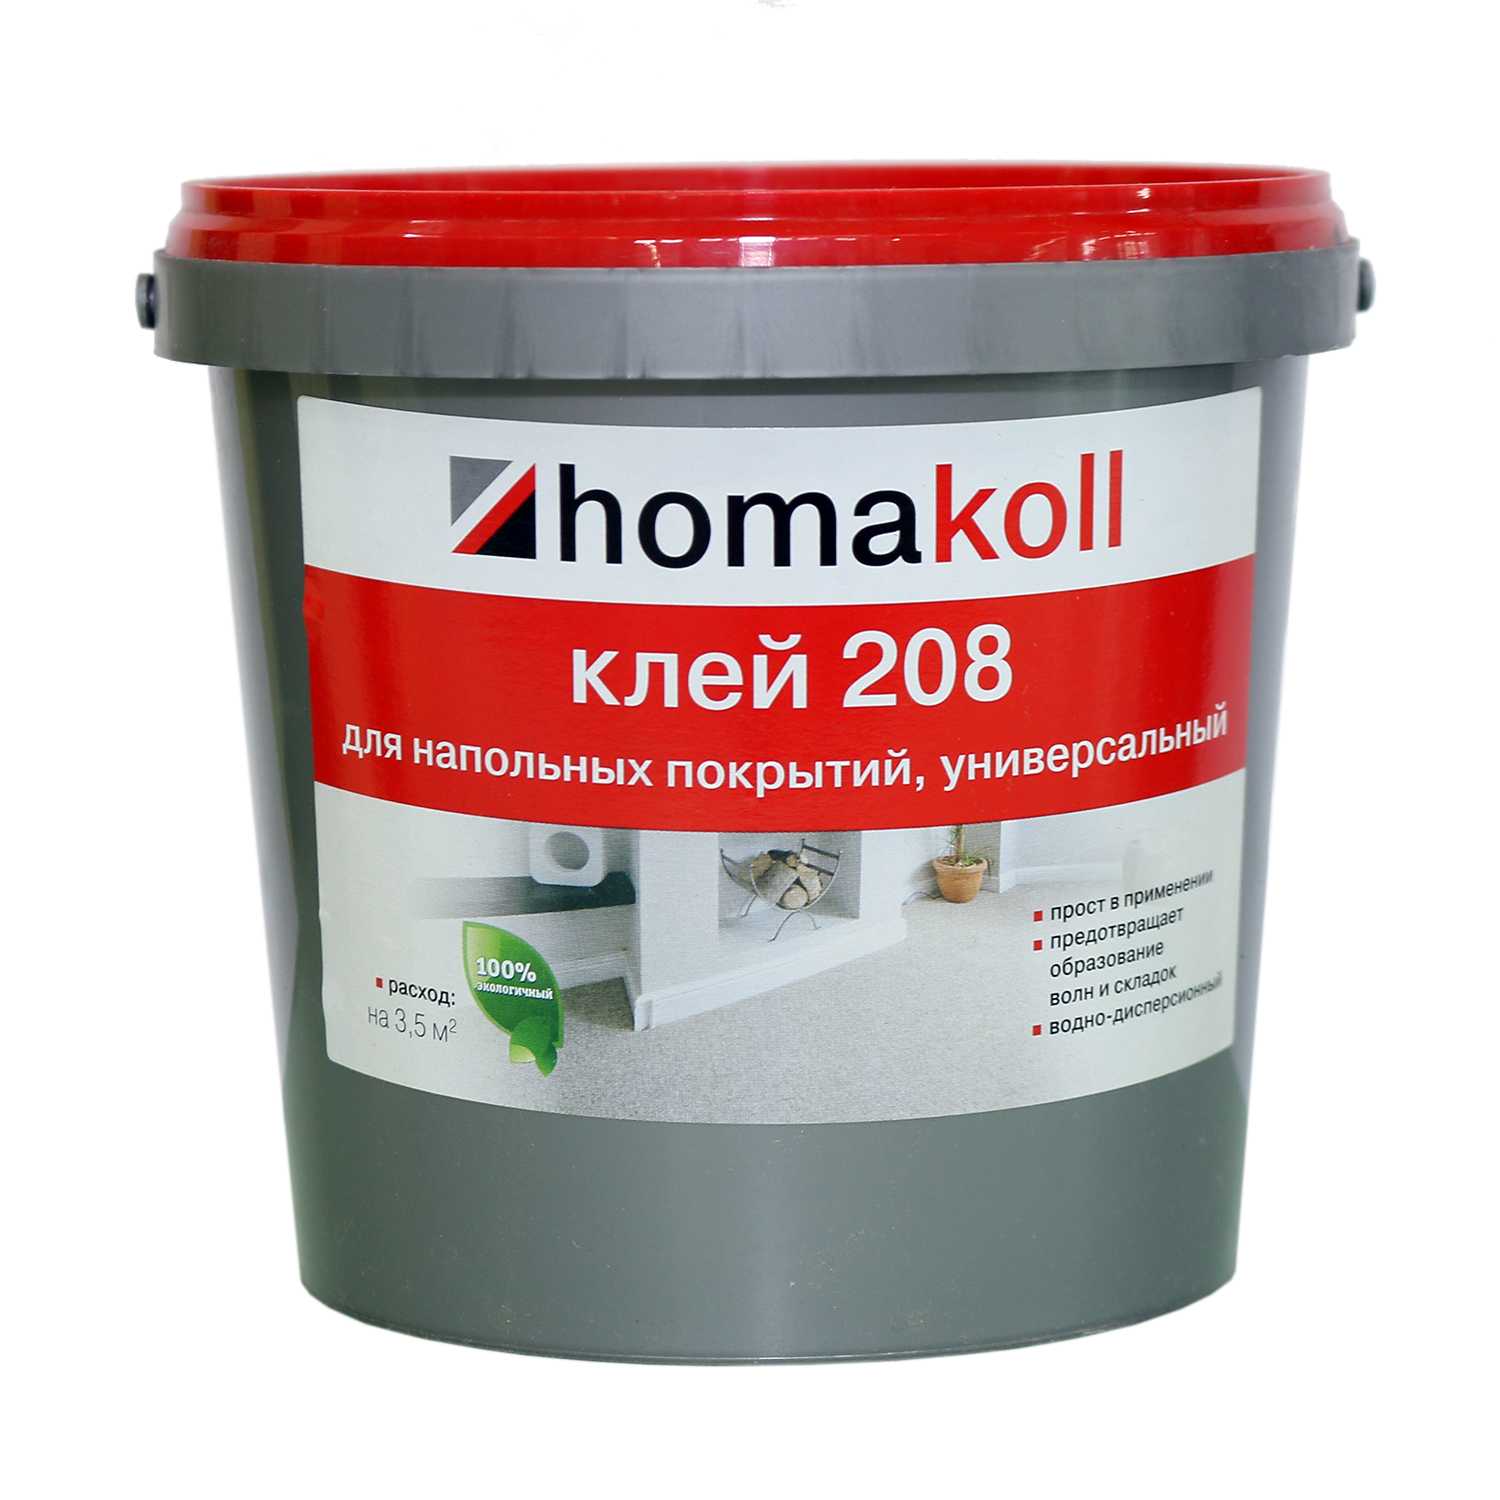 Клей homakoll 208 (4 кг)